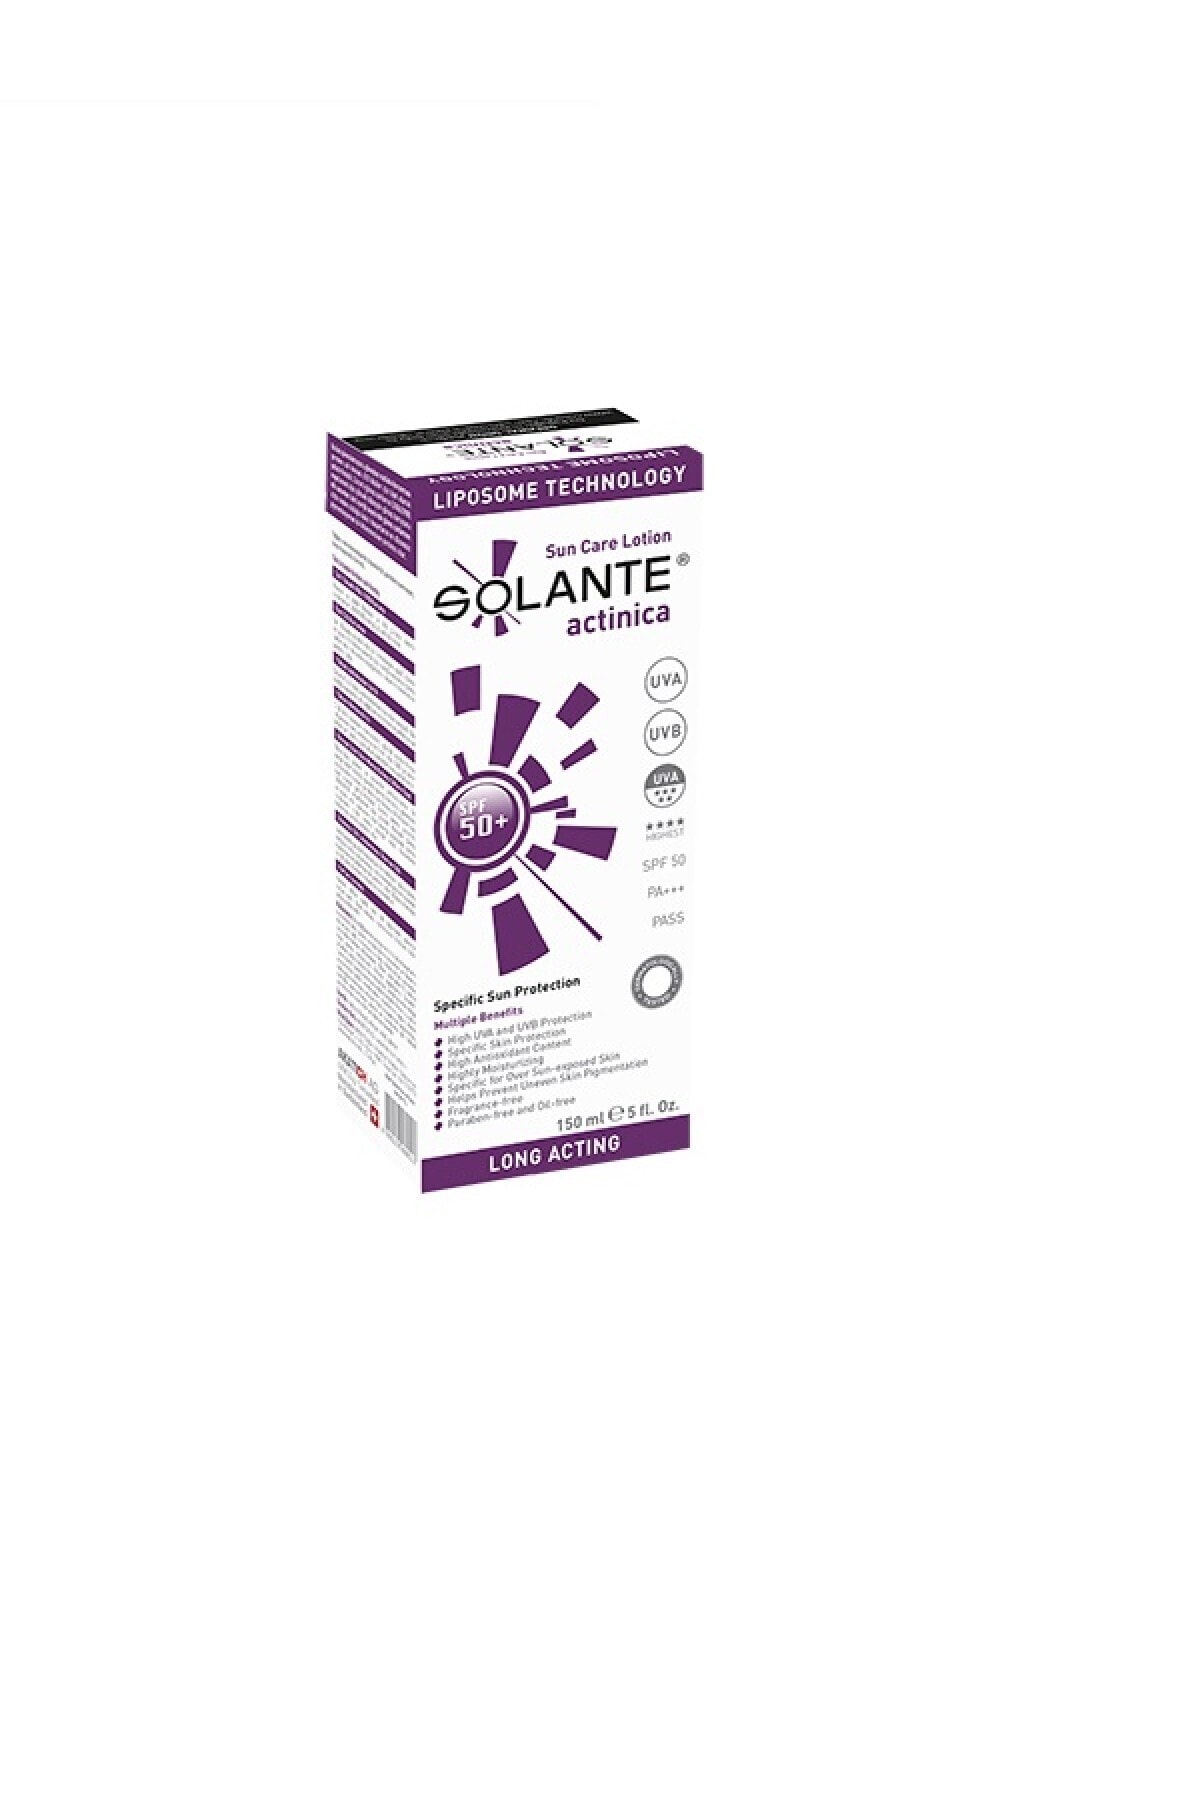 Solante Spf 50+ Actinica 150 ml